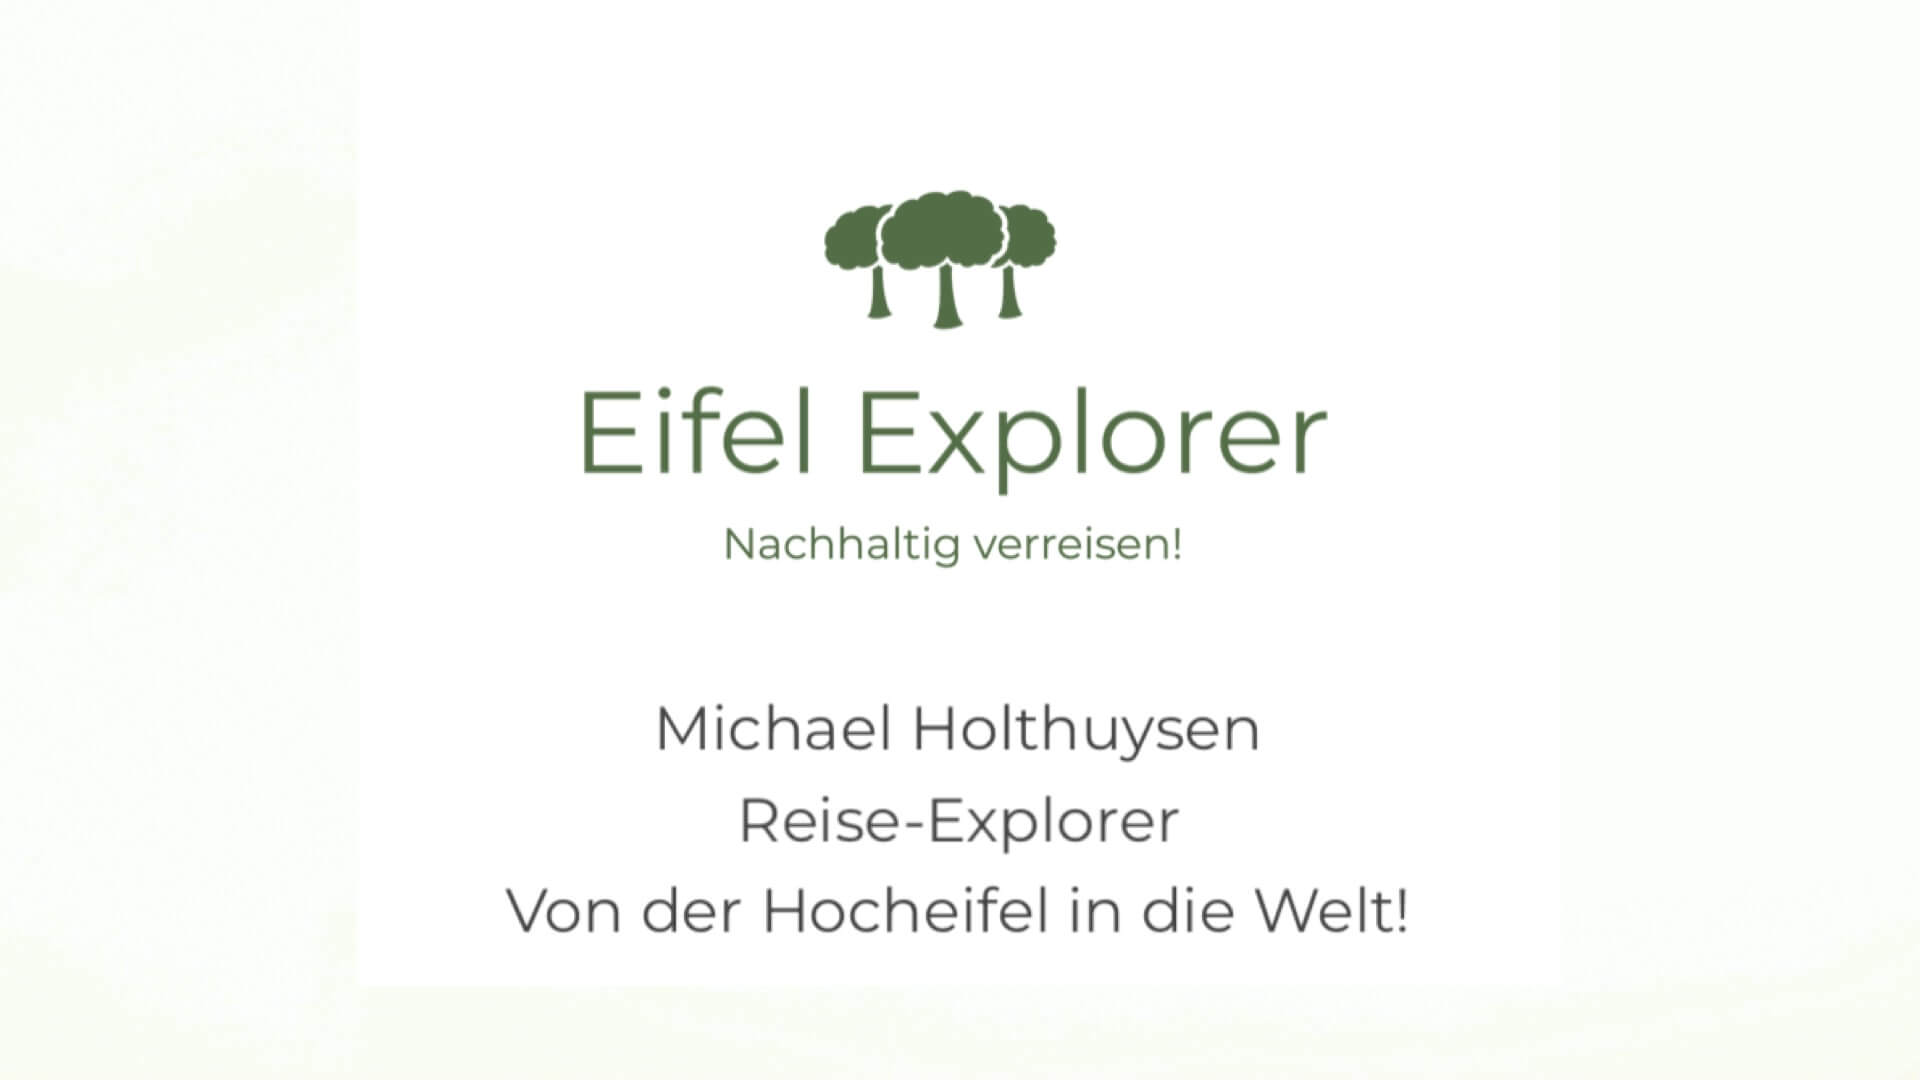 Reise Explorer Michael Holthuysen